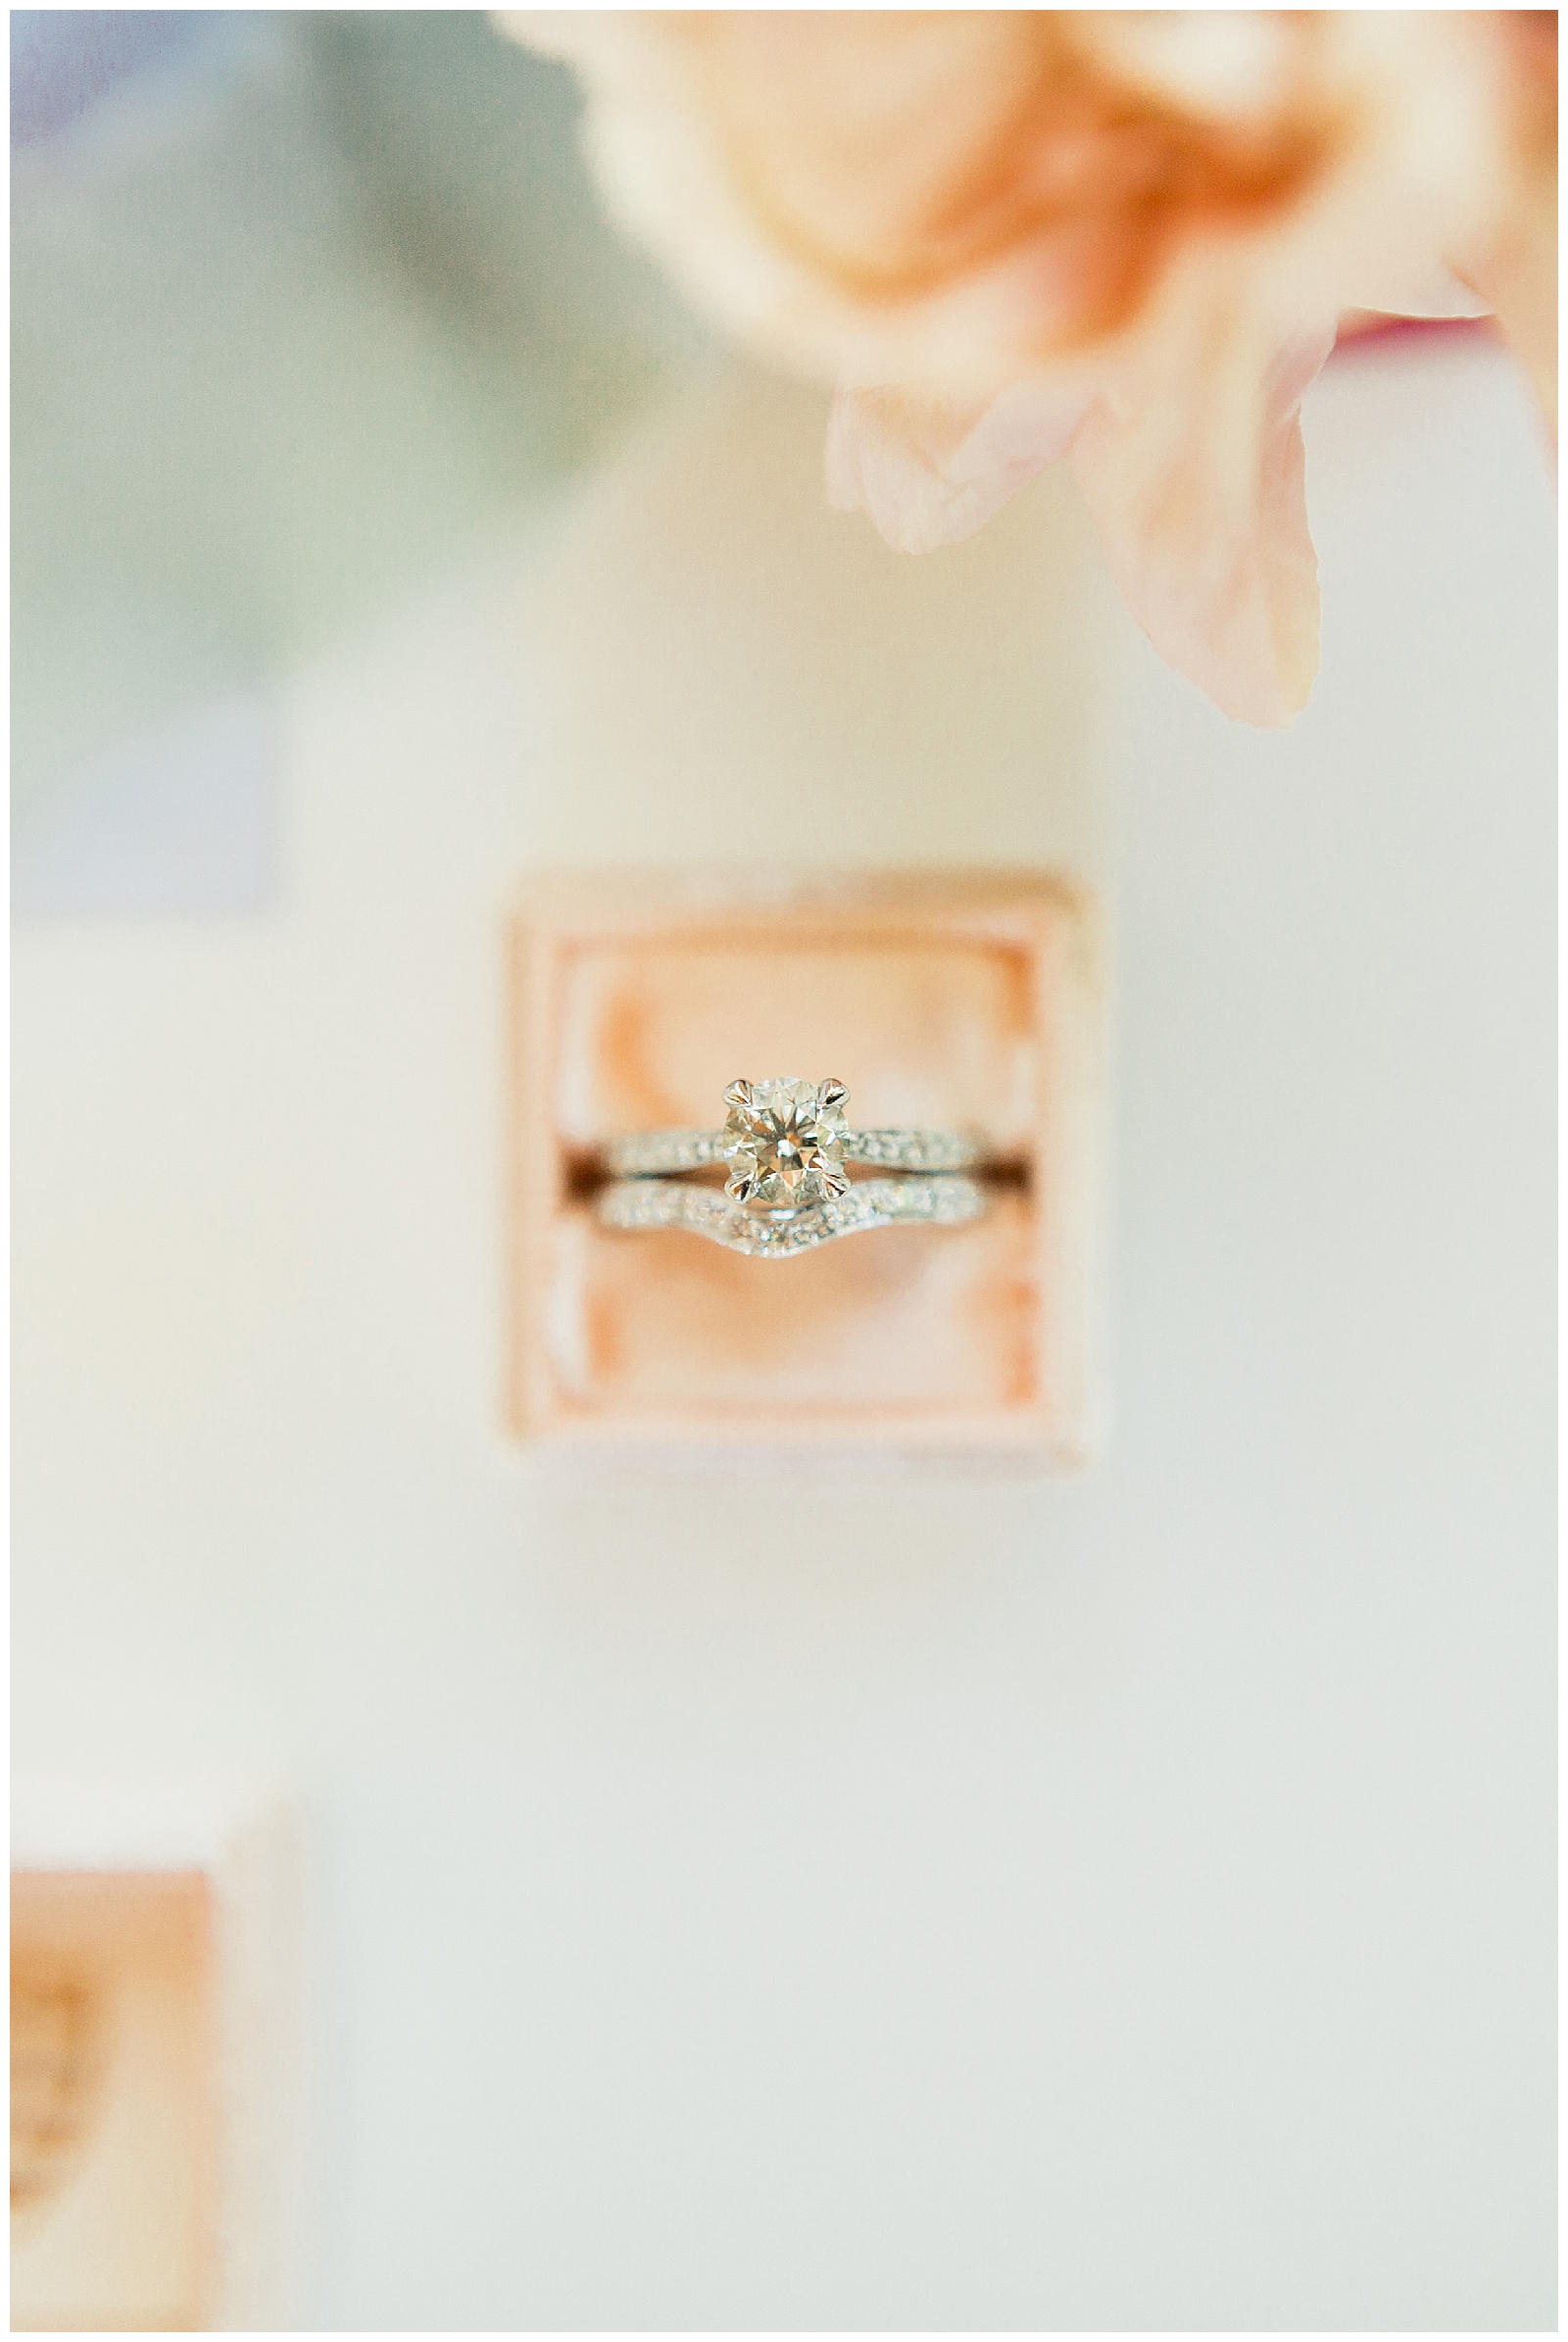 Solitaire wedding ring in the Mrs. Box velvet ring box